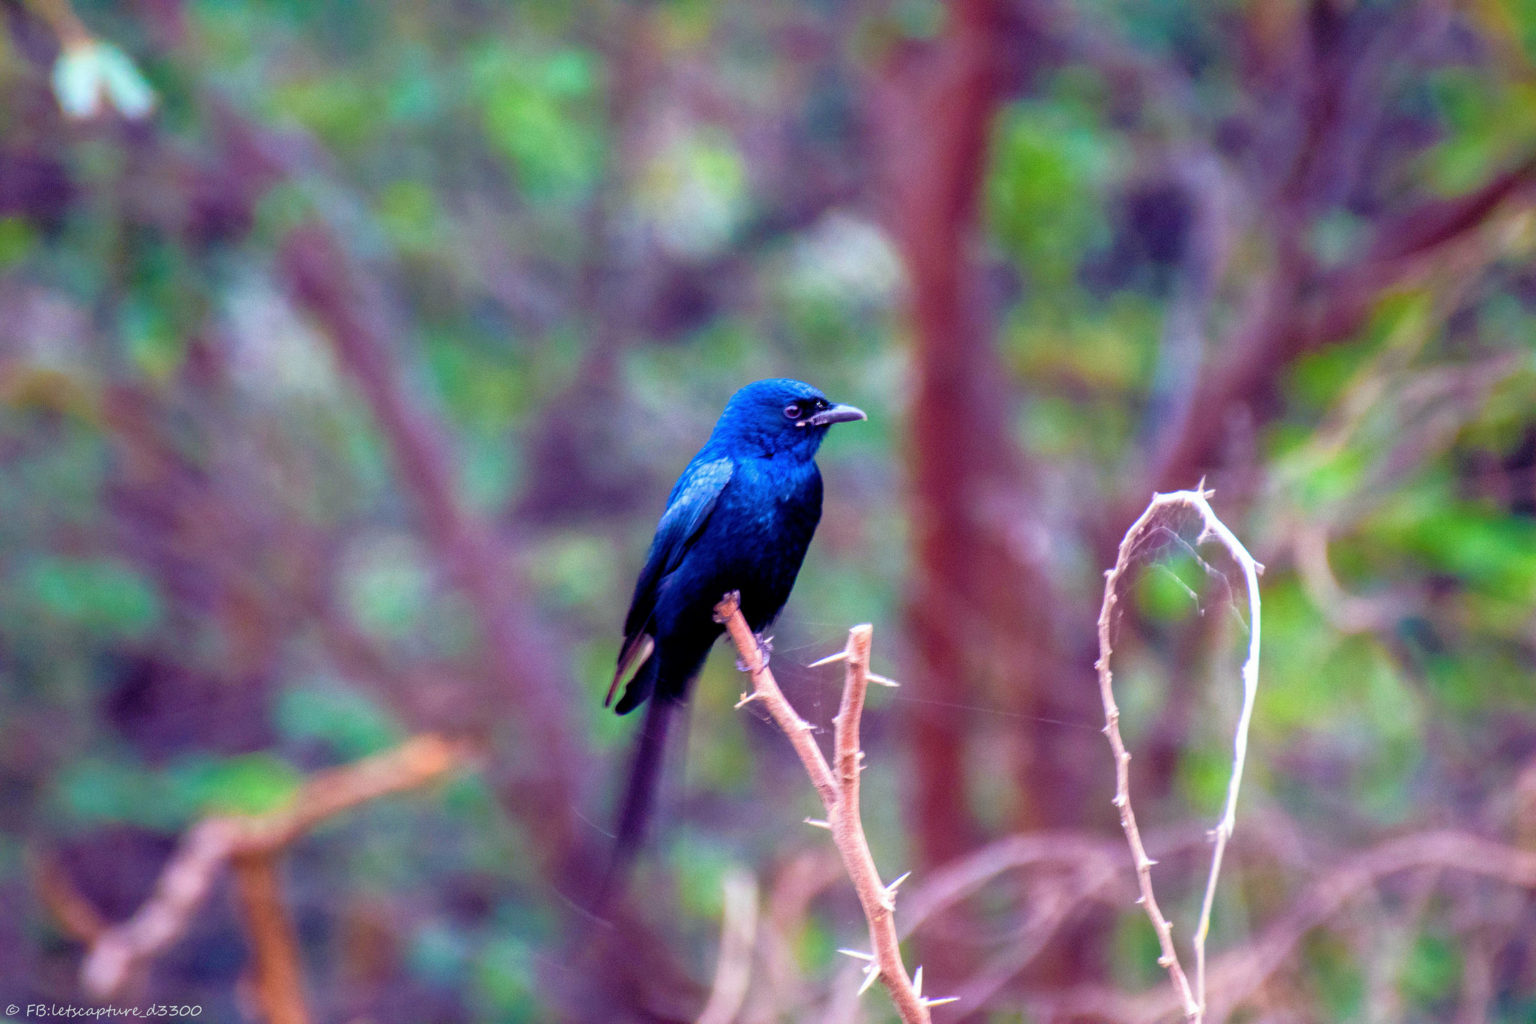 A Visit to Okhla Bird Sanctuary in Delhi